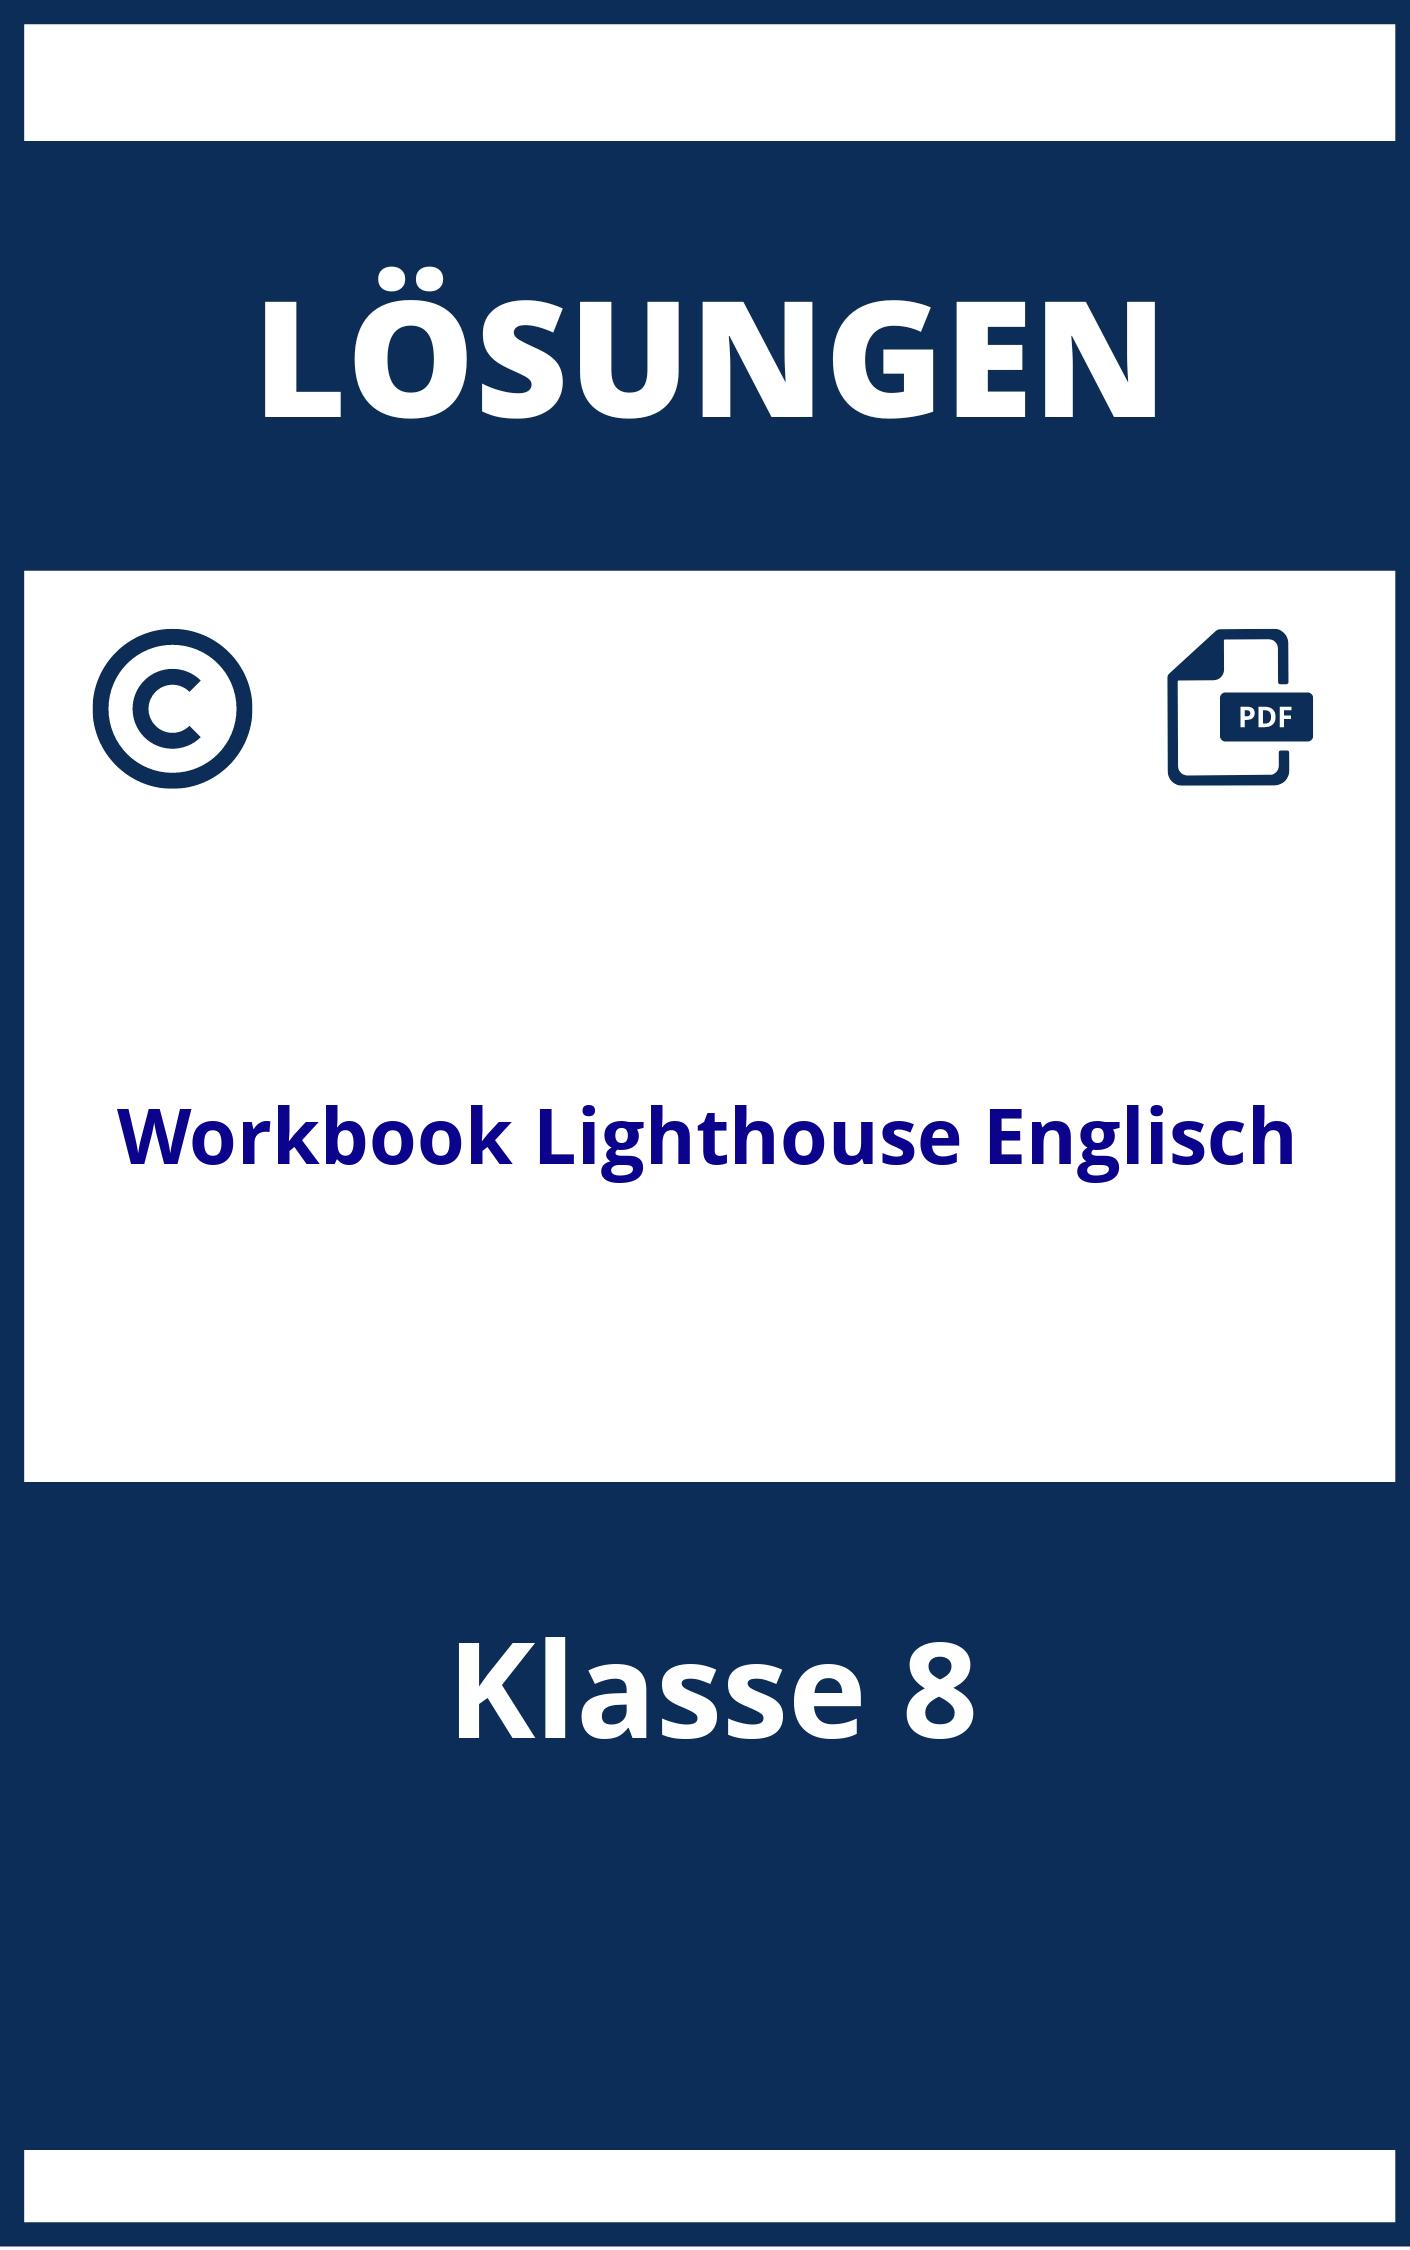 Workbook Lighthouse Englisch Klasse 8 Lösungen